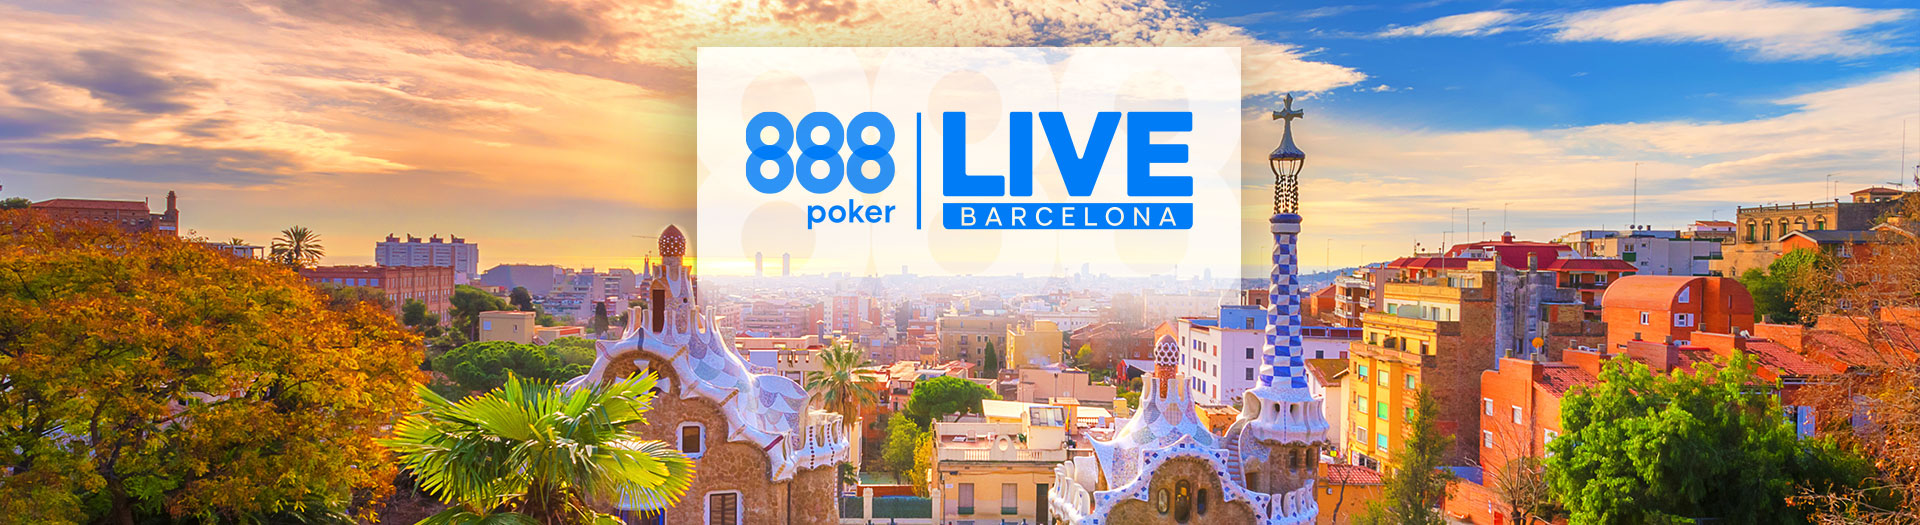 Live-Barcelona-LP-image-1676898279442_tcm2000-580628